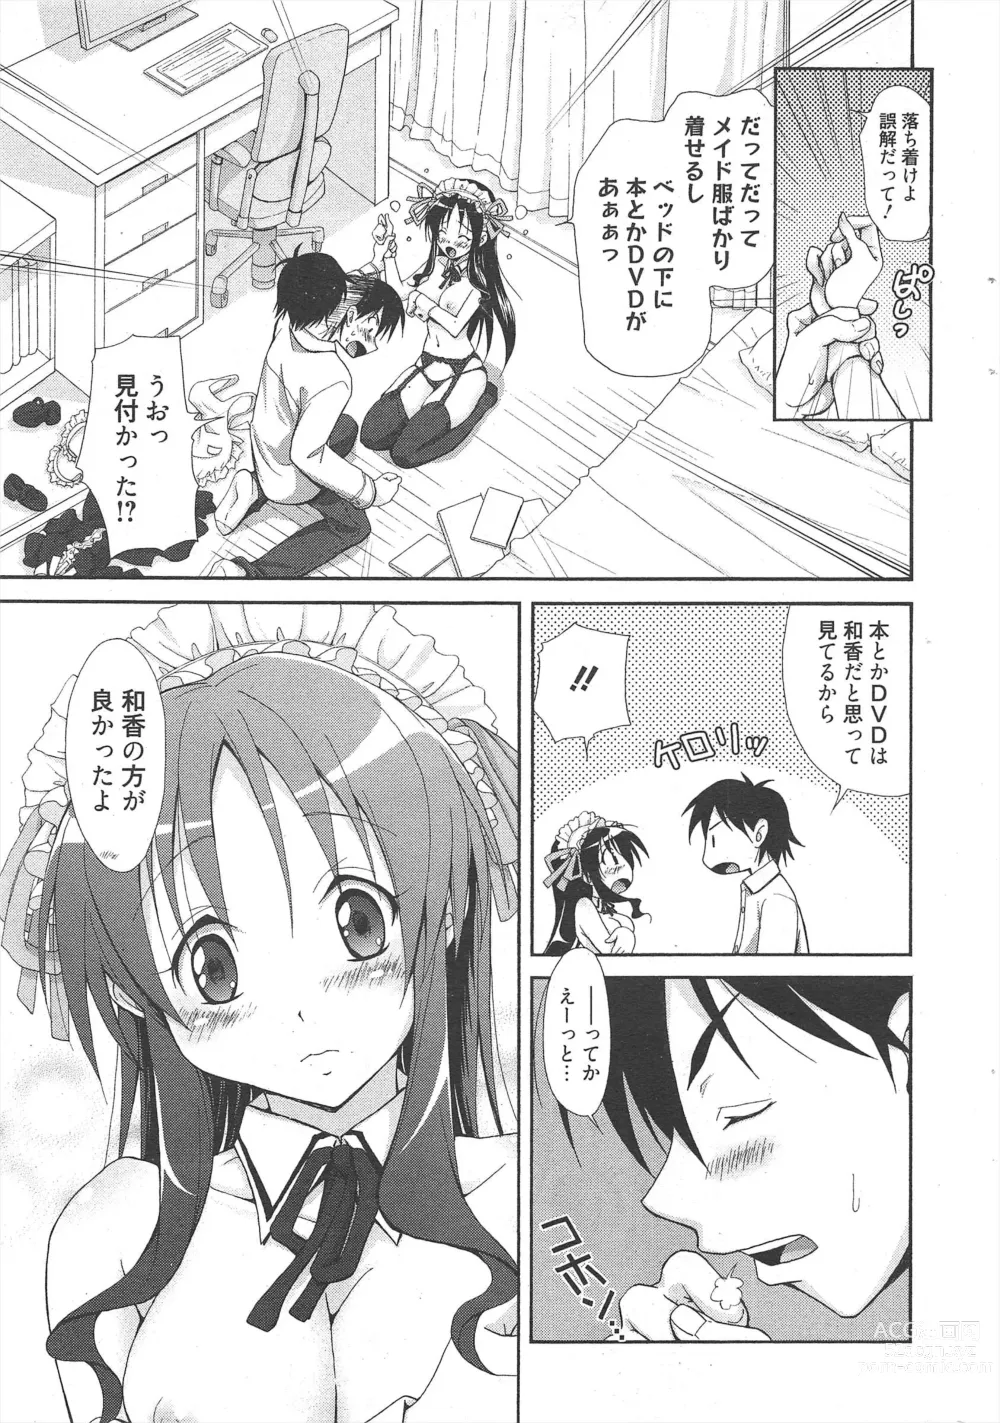 Page 15 of manga Manga Bangaichi 2011-08